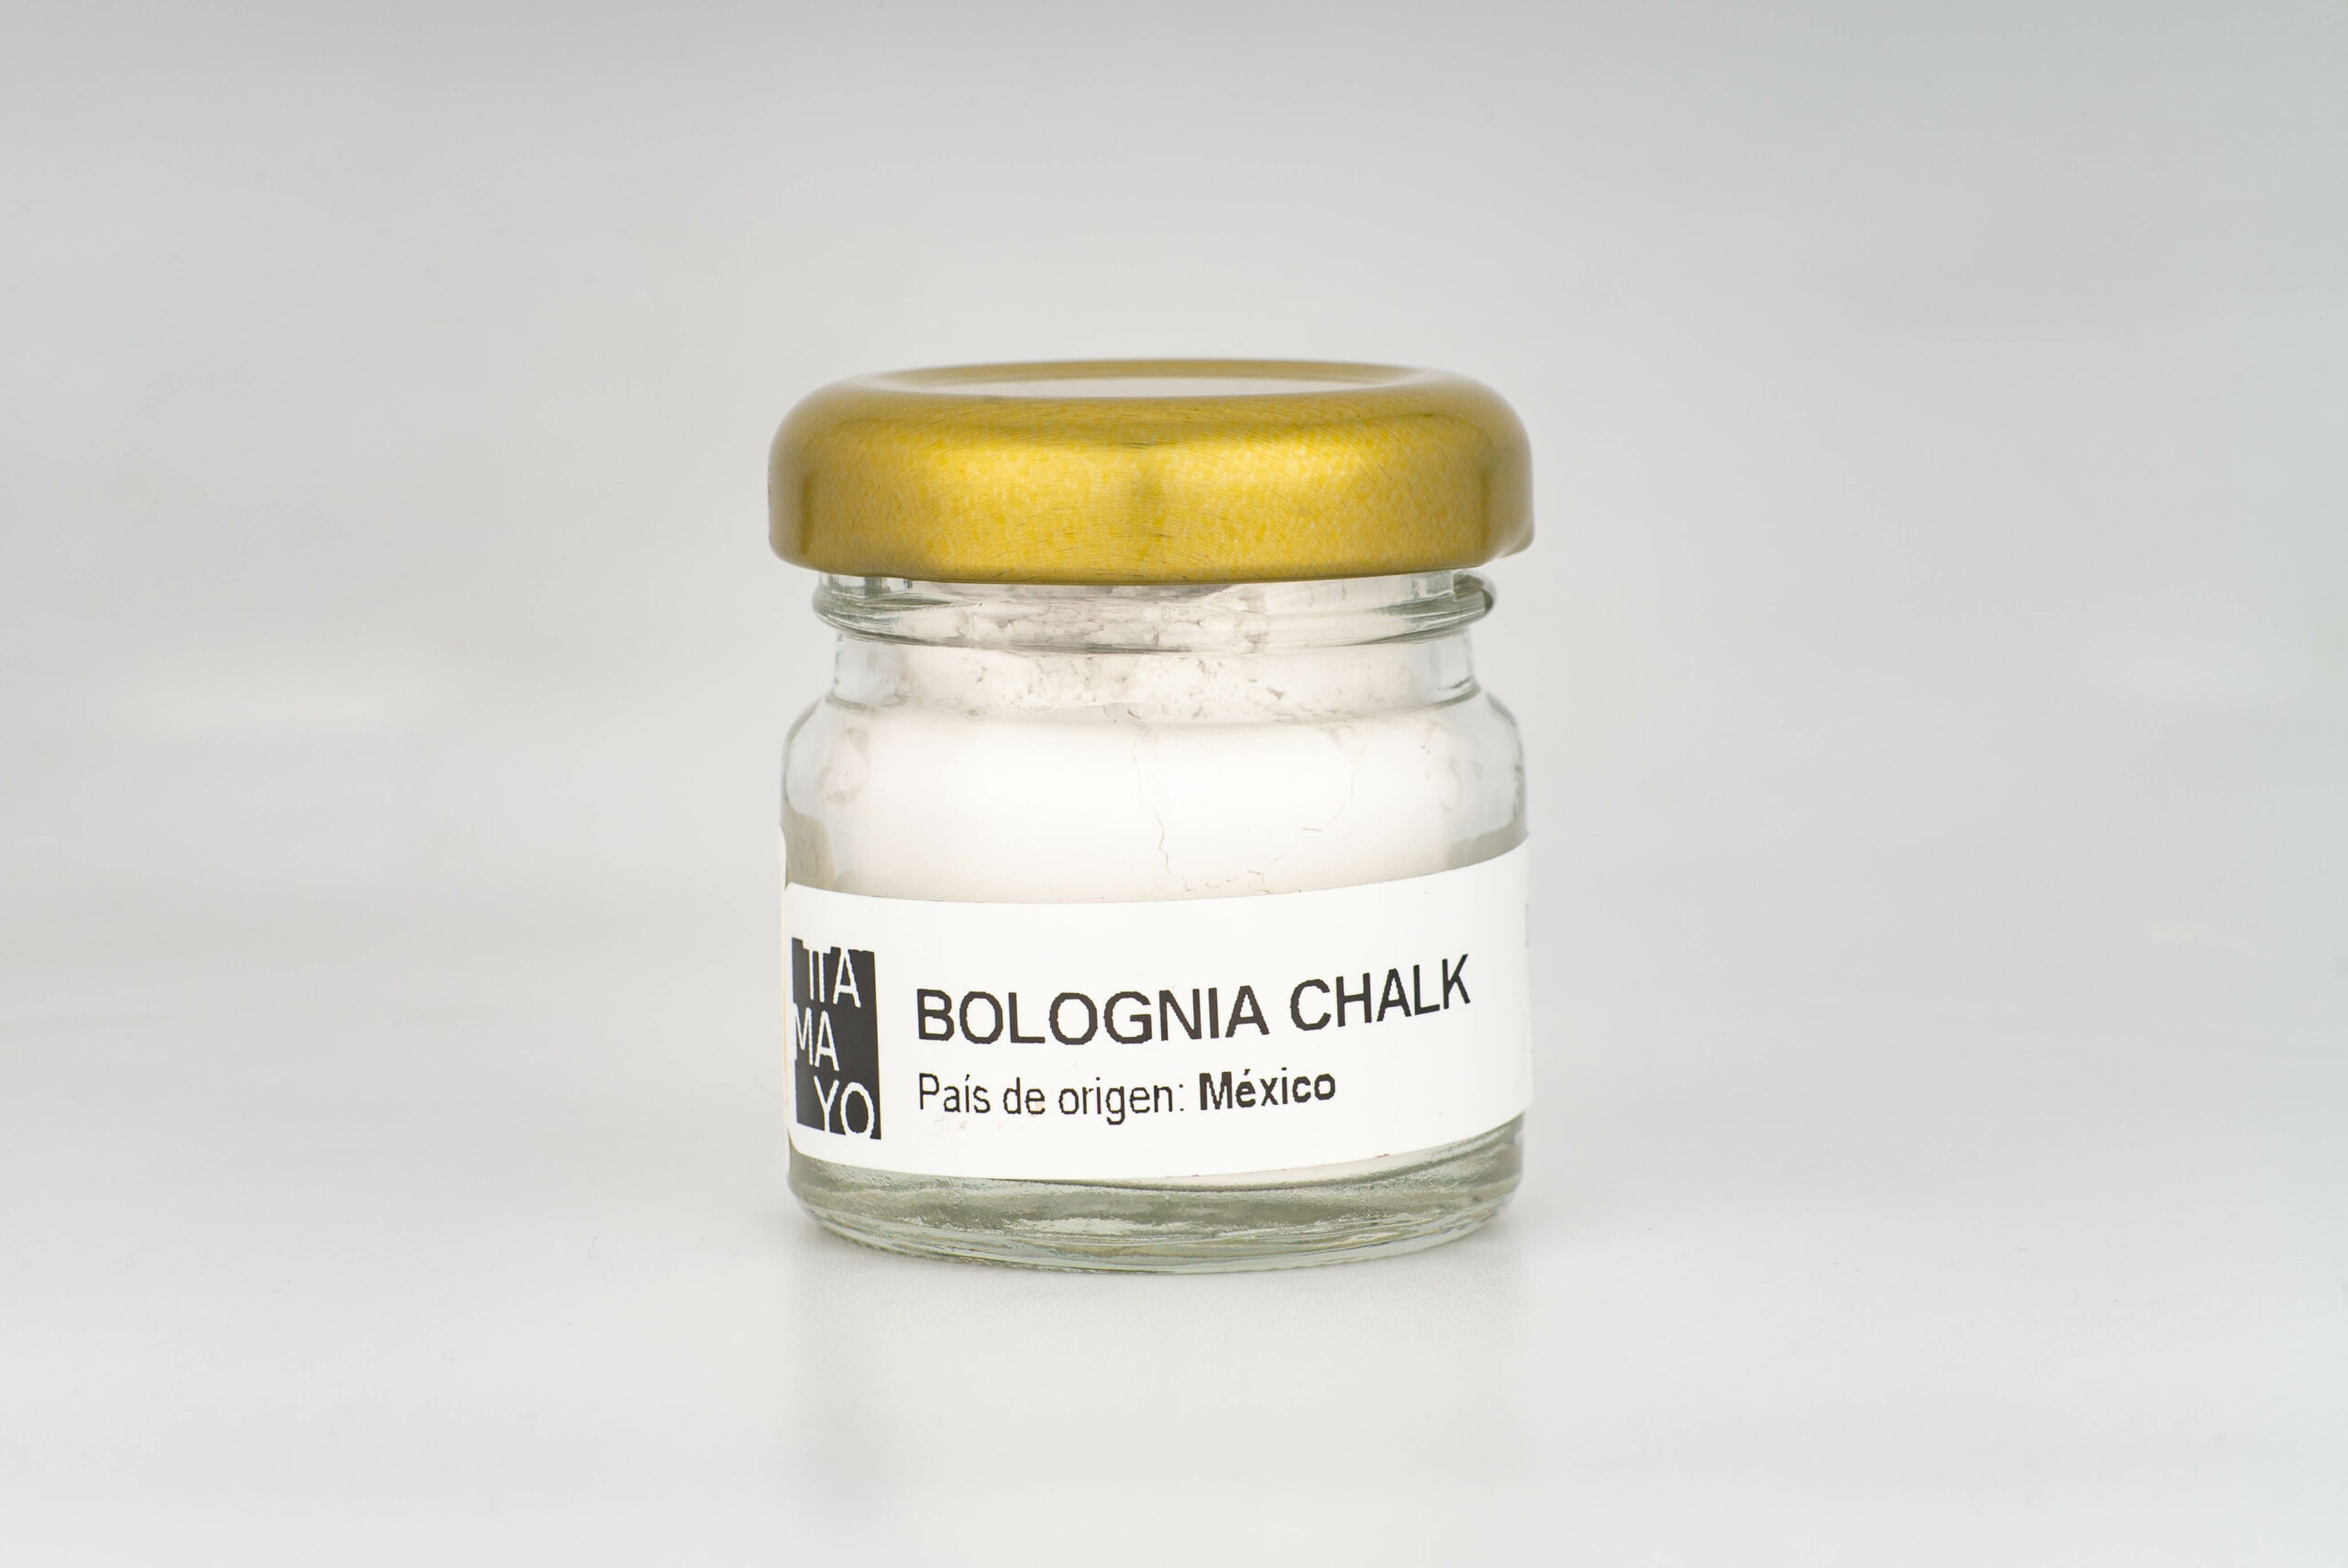 Bolognia Chalk